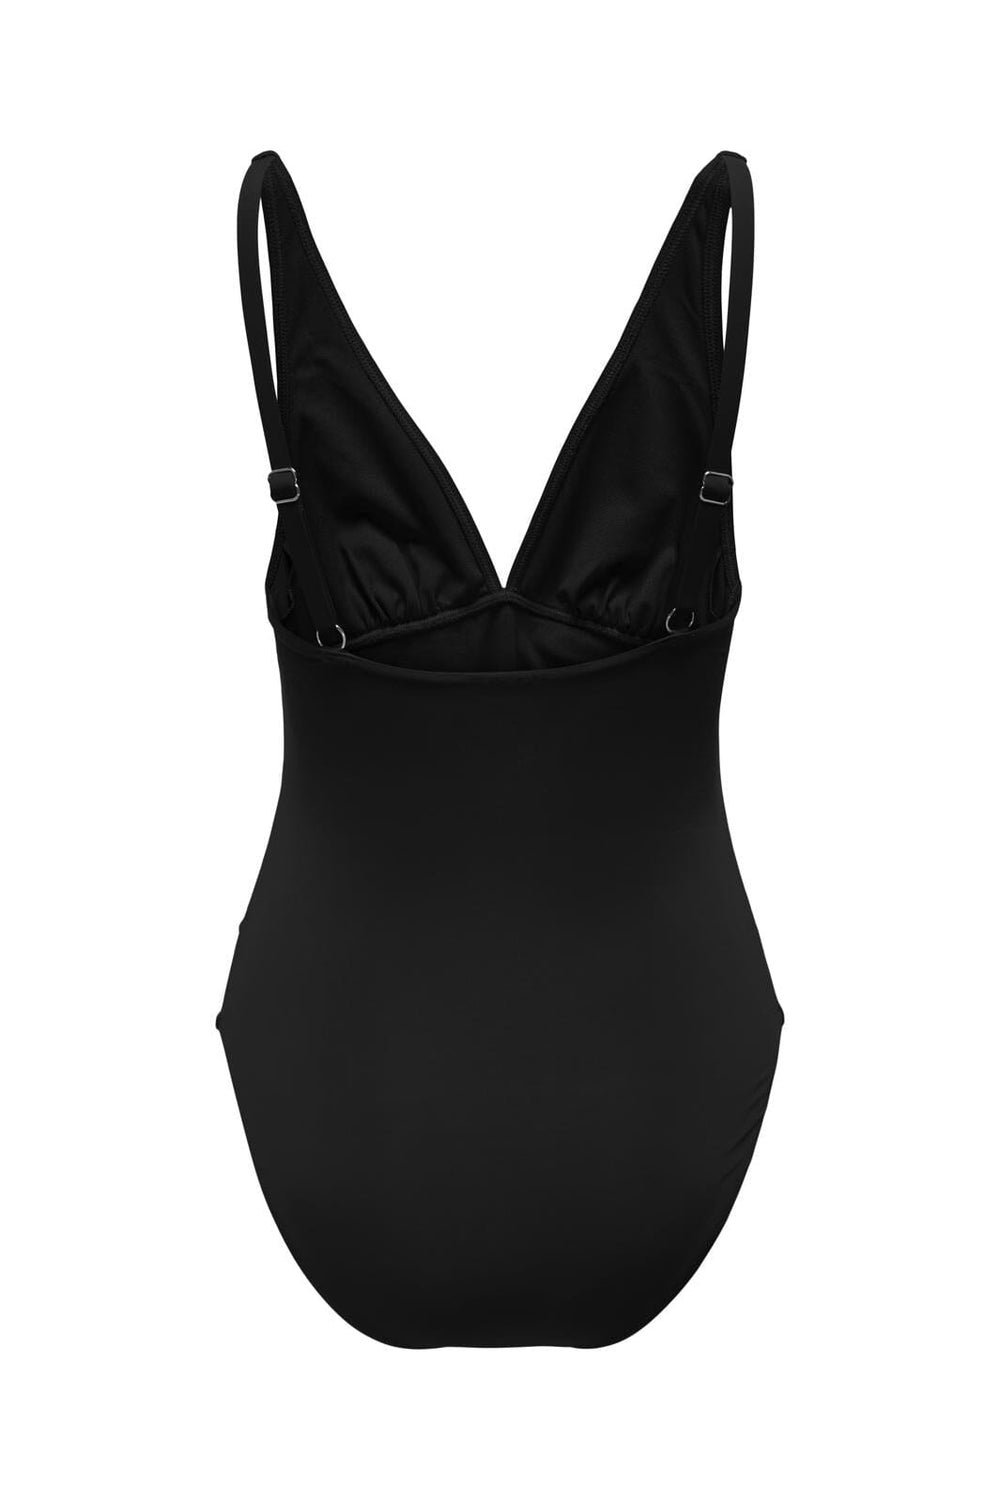 Only - Onlvenezia V-Neck Swimsuit - 4491865 Black